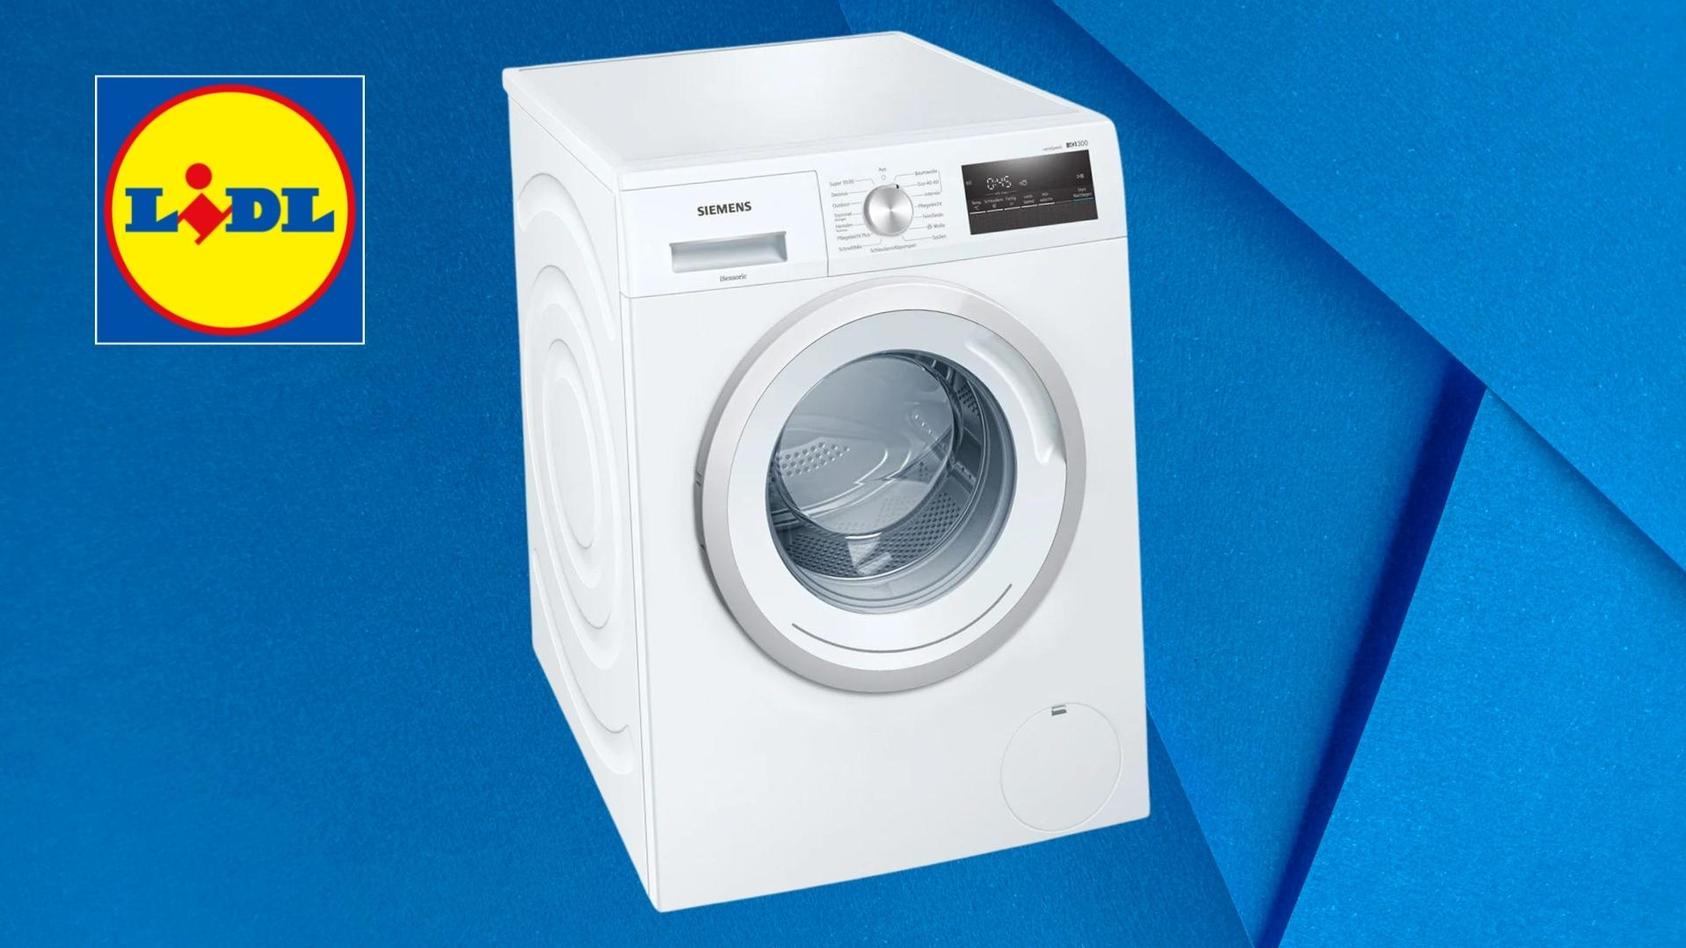 lidl-verkauft-die-waschmaschine-wm14n177-von-siemens-zum-rabatt-preis-wie-gut-ist-das-angebot